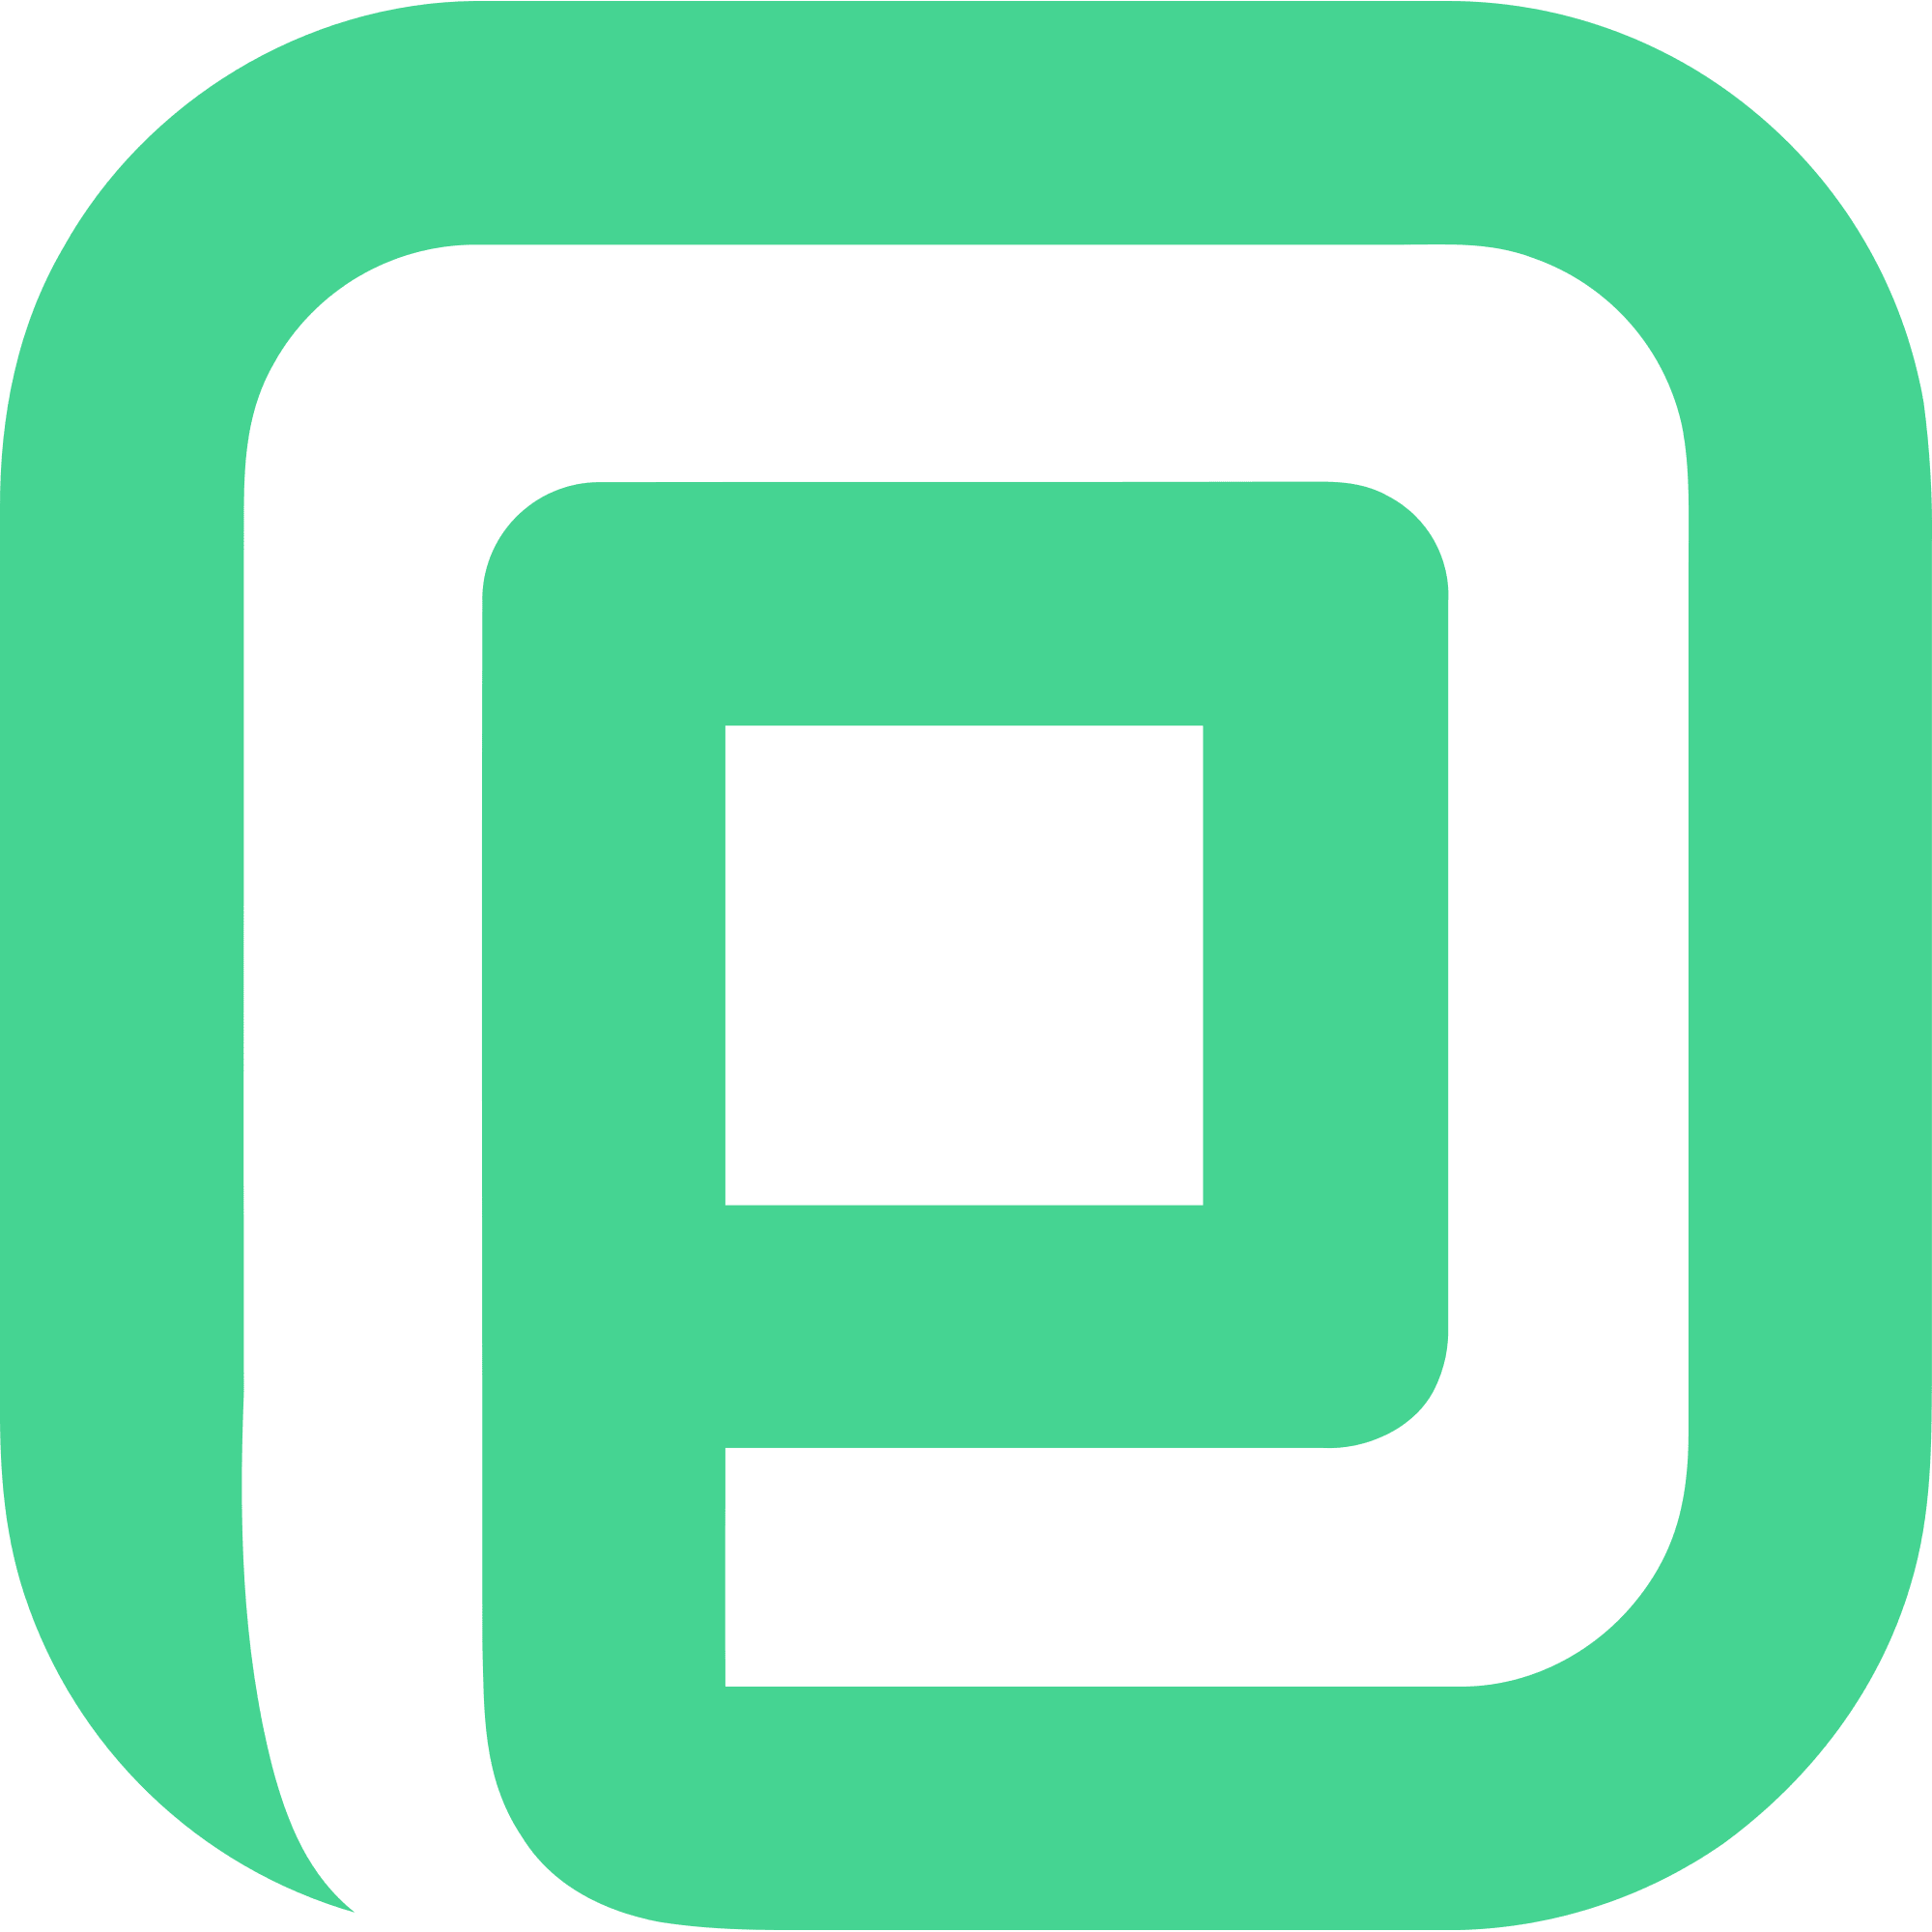 Particl (PART) logo